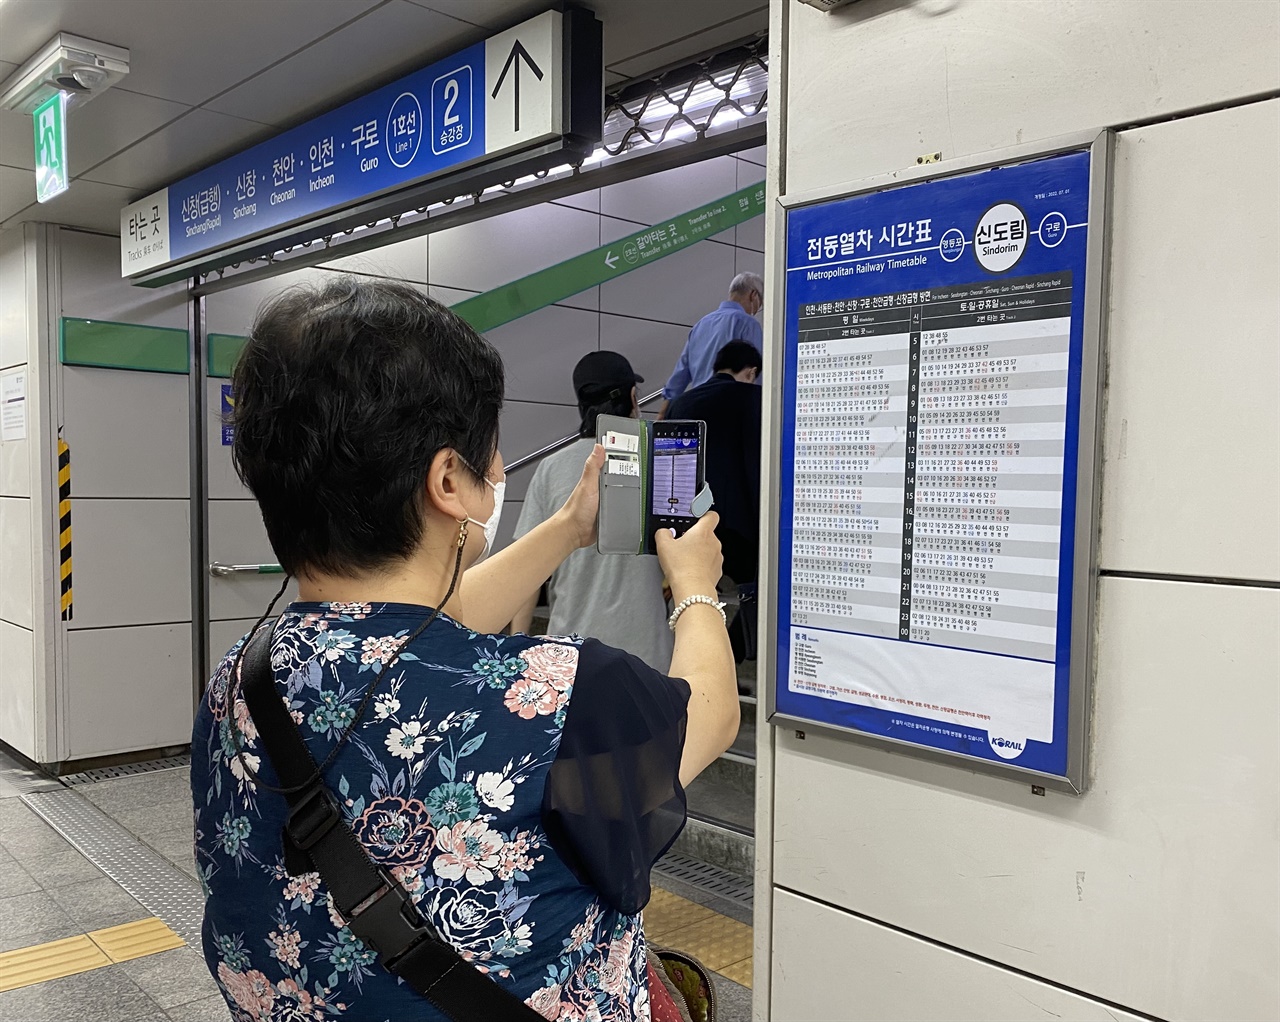 인쇄식 열차 시간표를 휴대폰으로 촬영하고 있는 시민